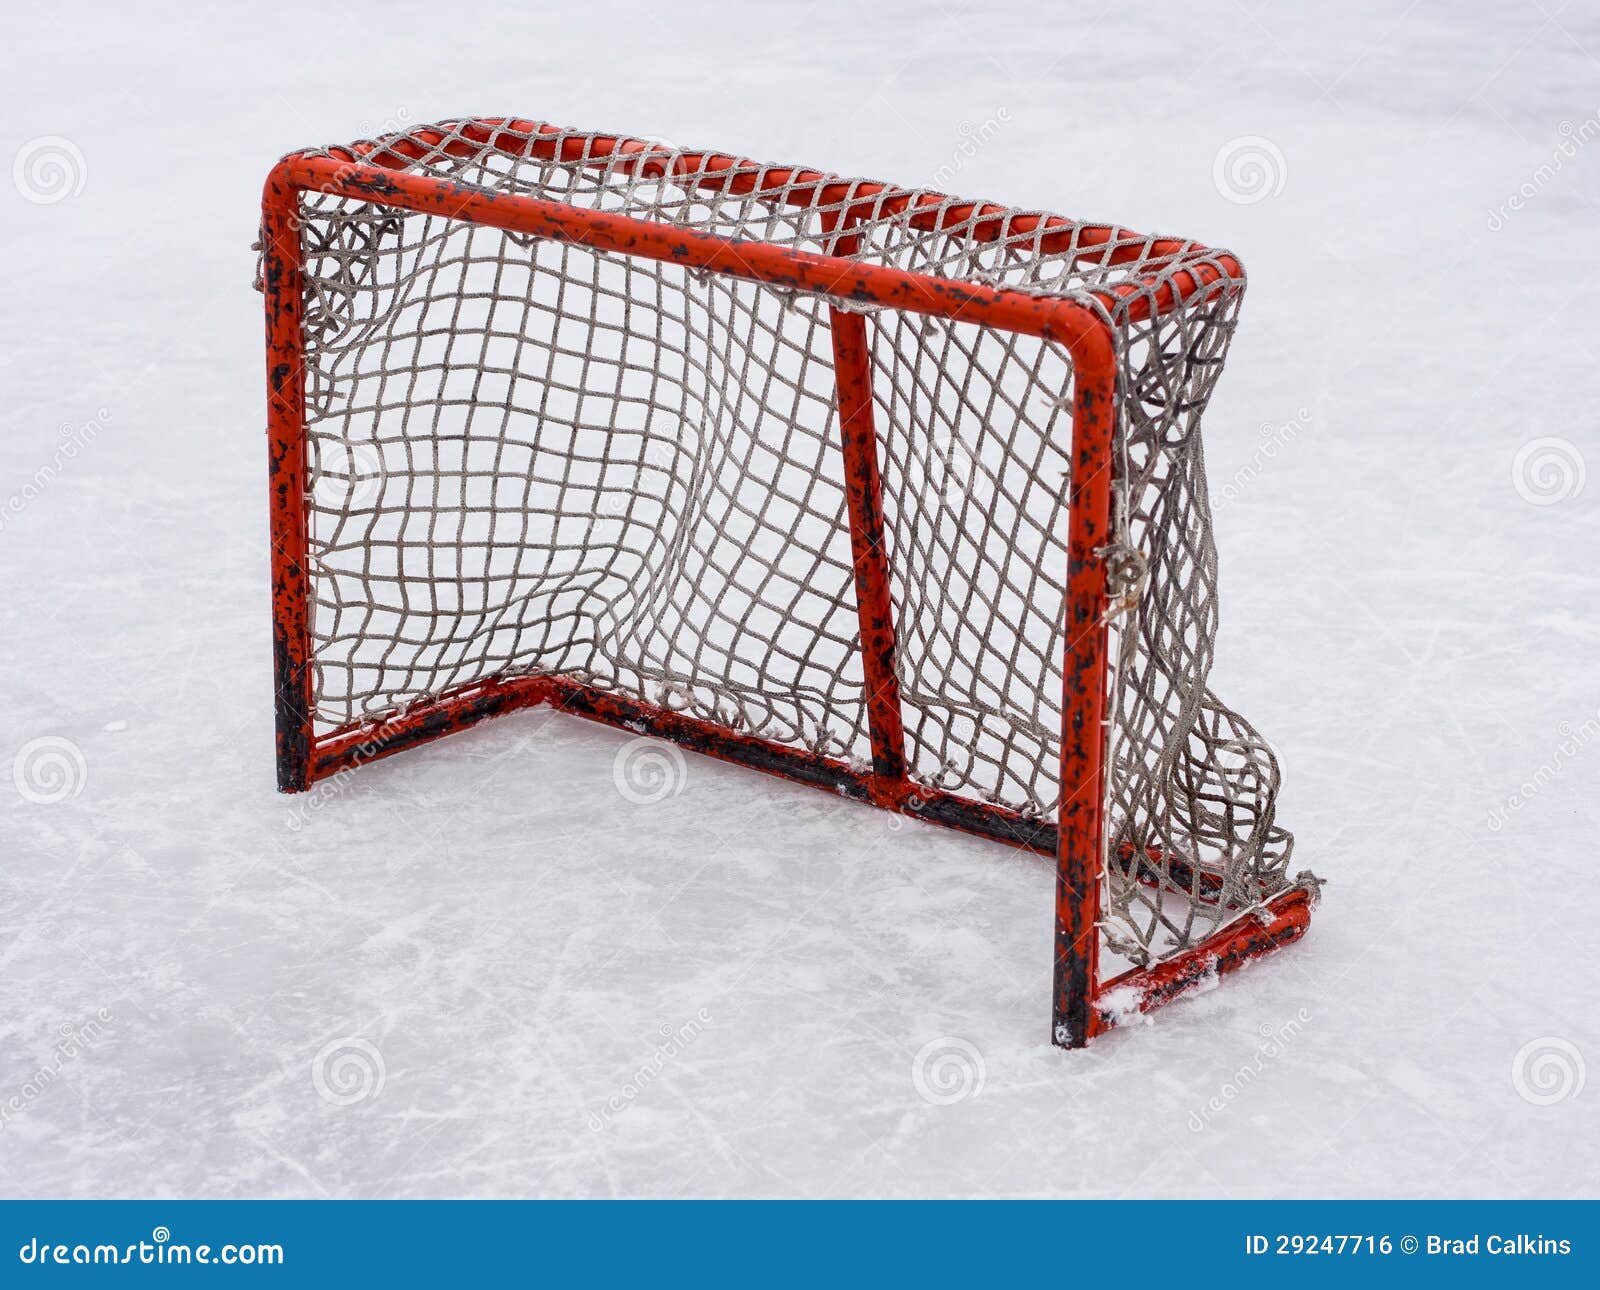 hockey net clipart - photo #28